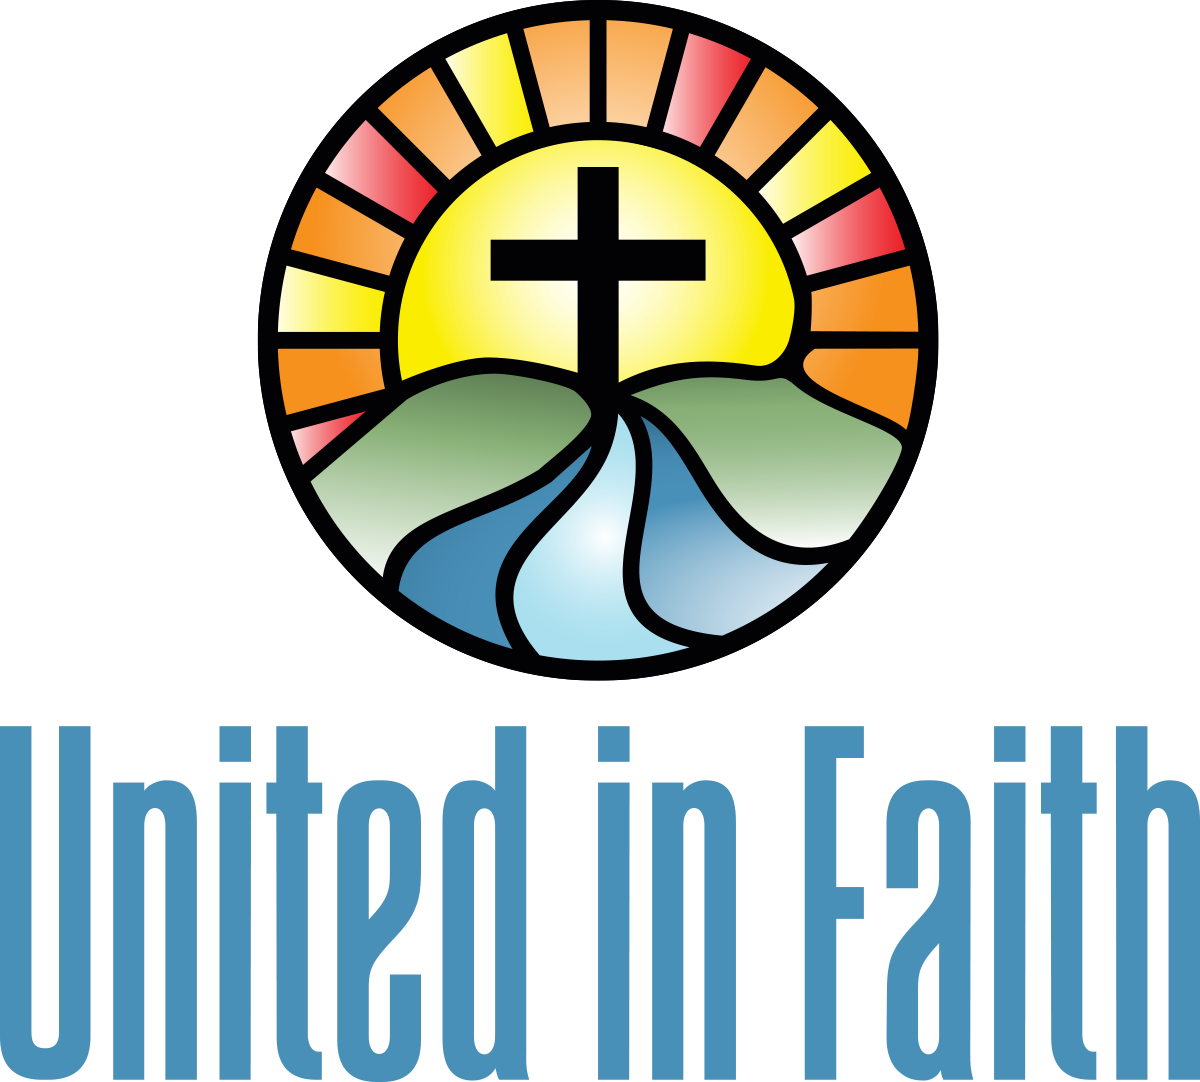 United in Faith